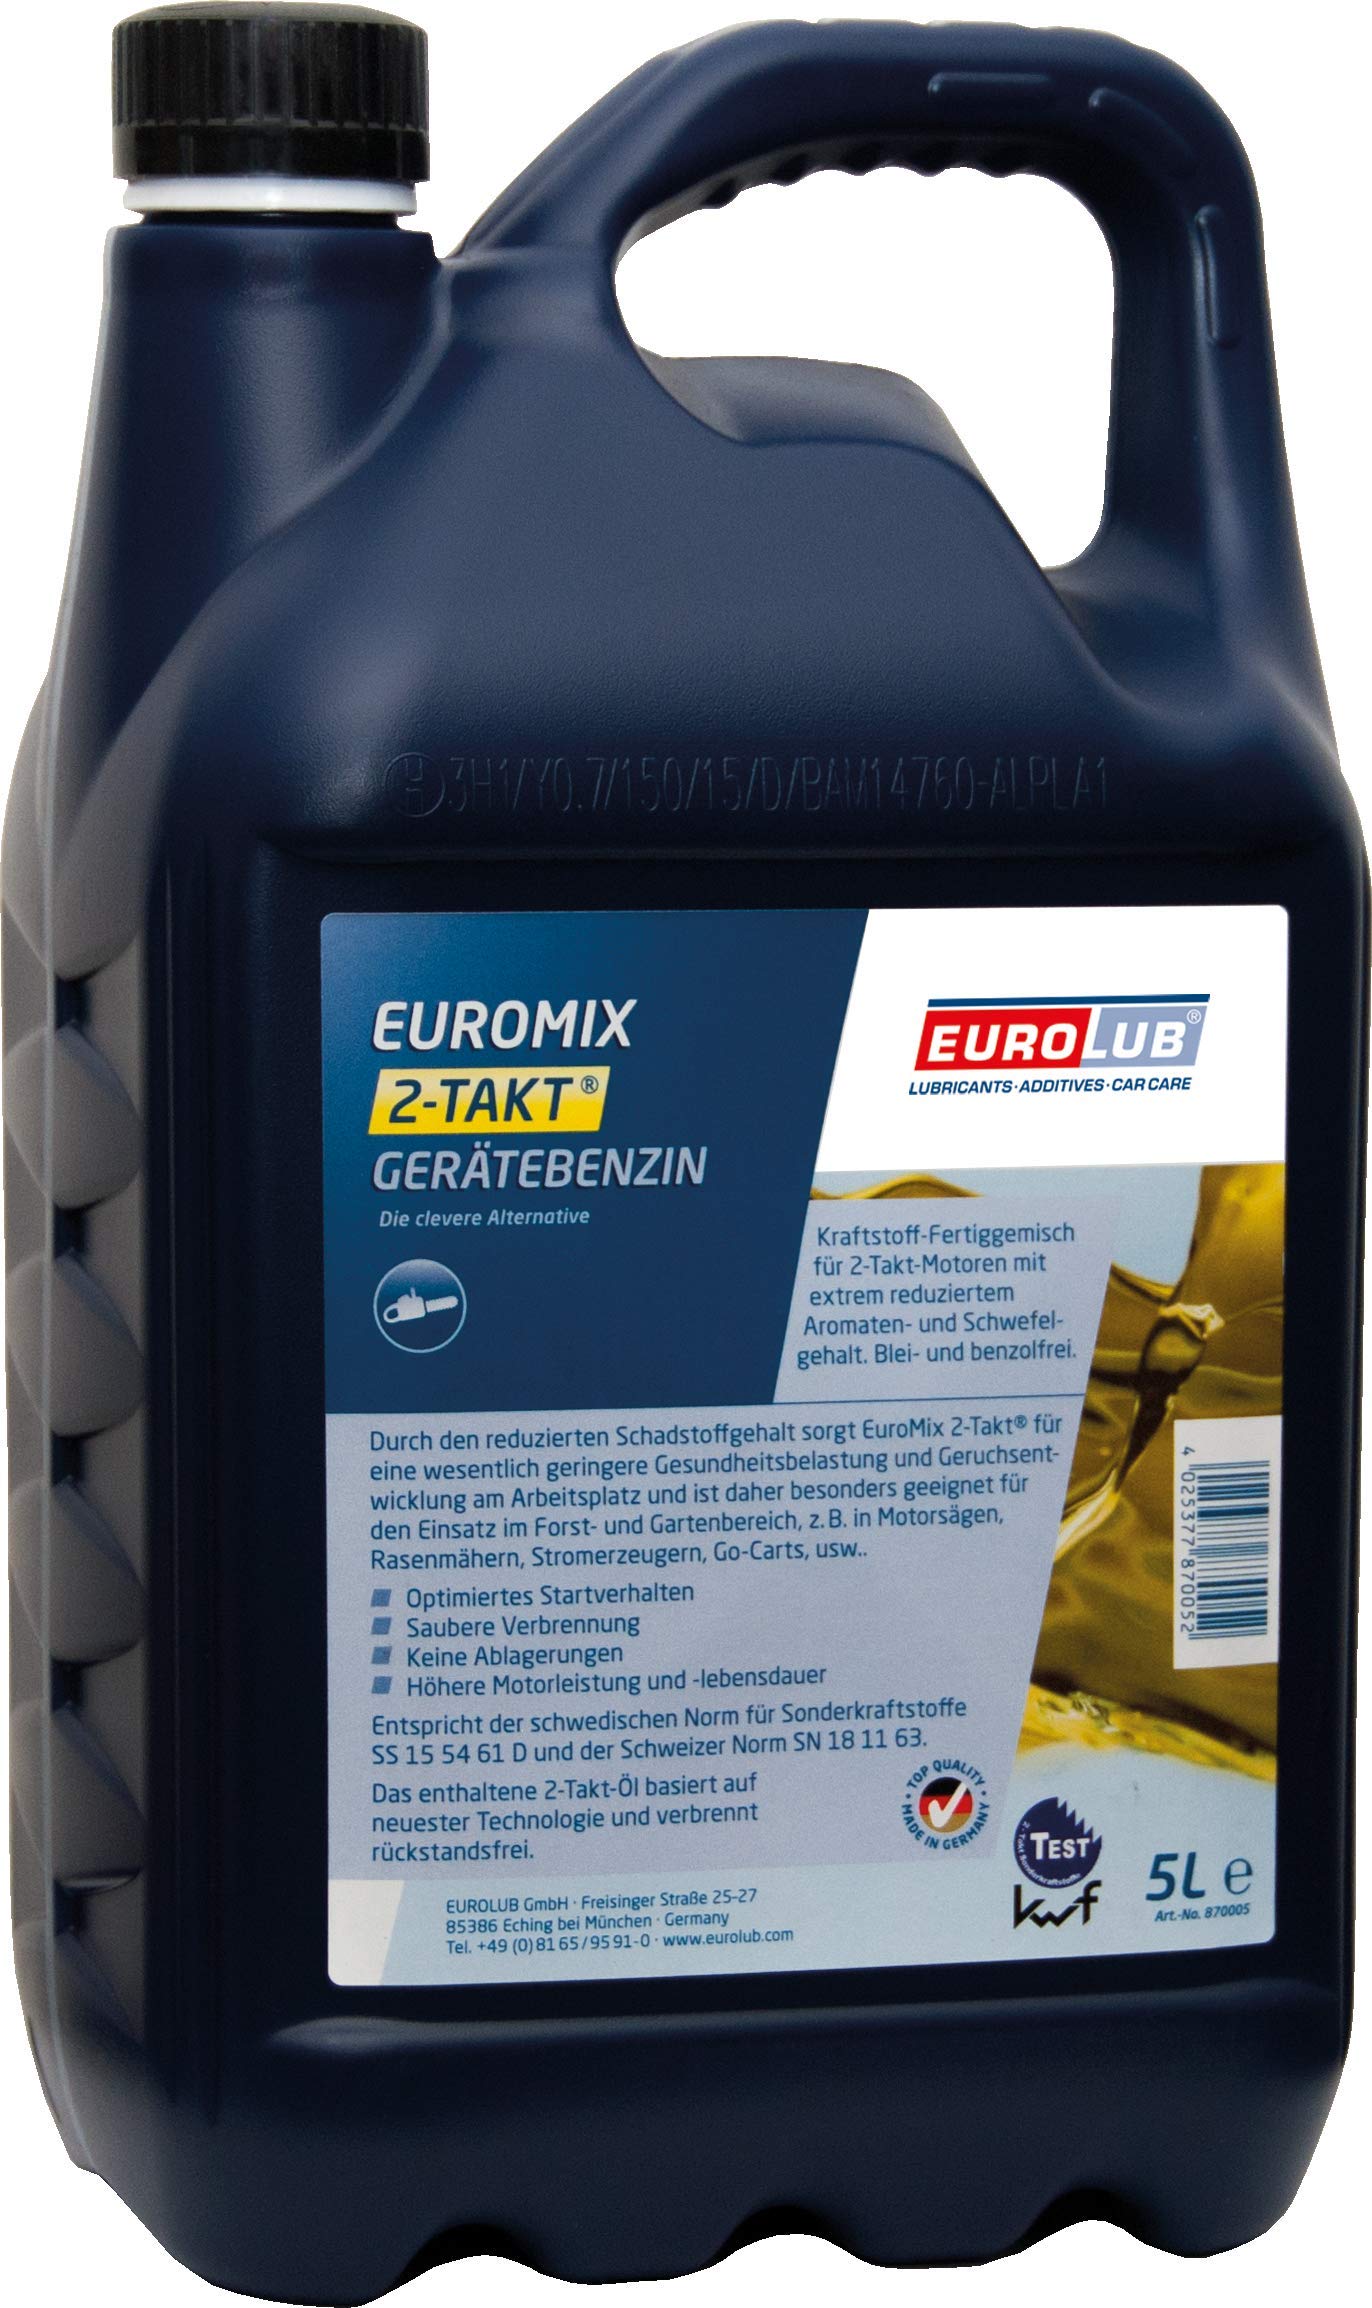 EUROLUB Euromix 2-TAKT Gerätebenzin, 5 Liter von EUROLUB